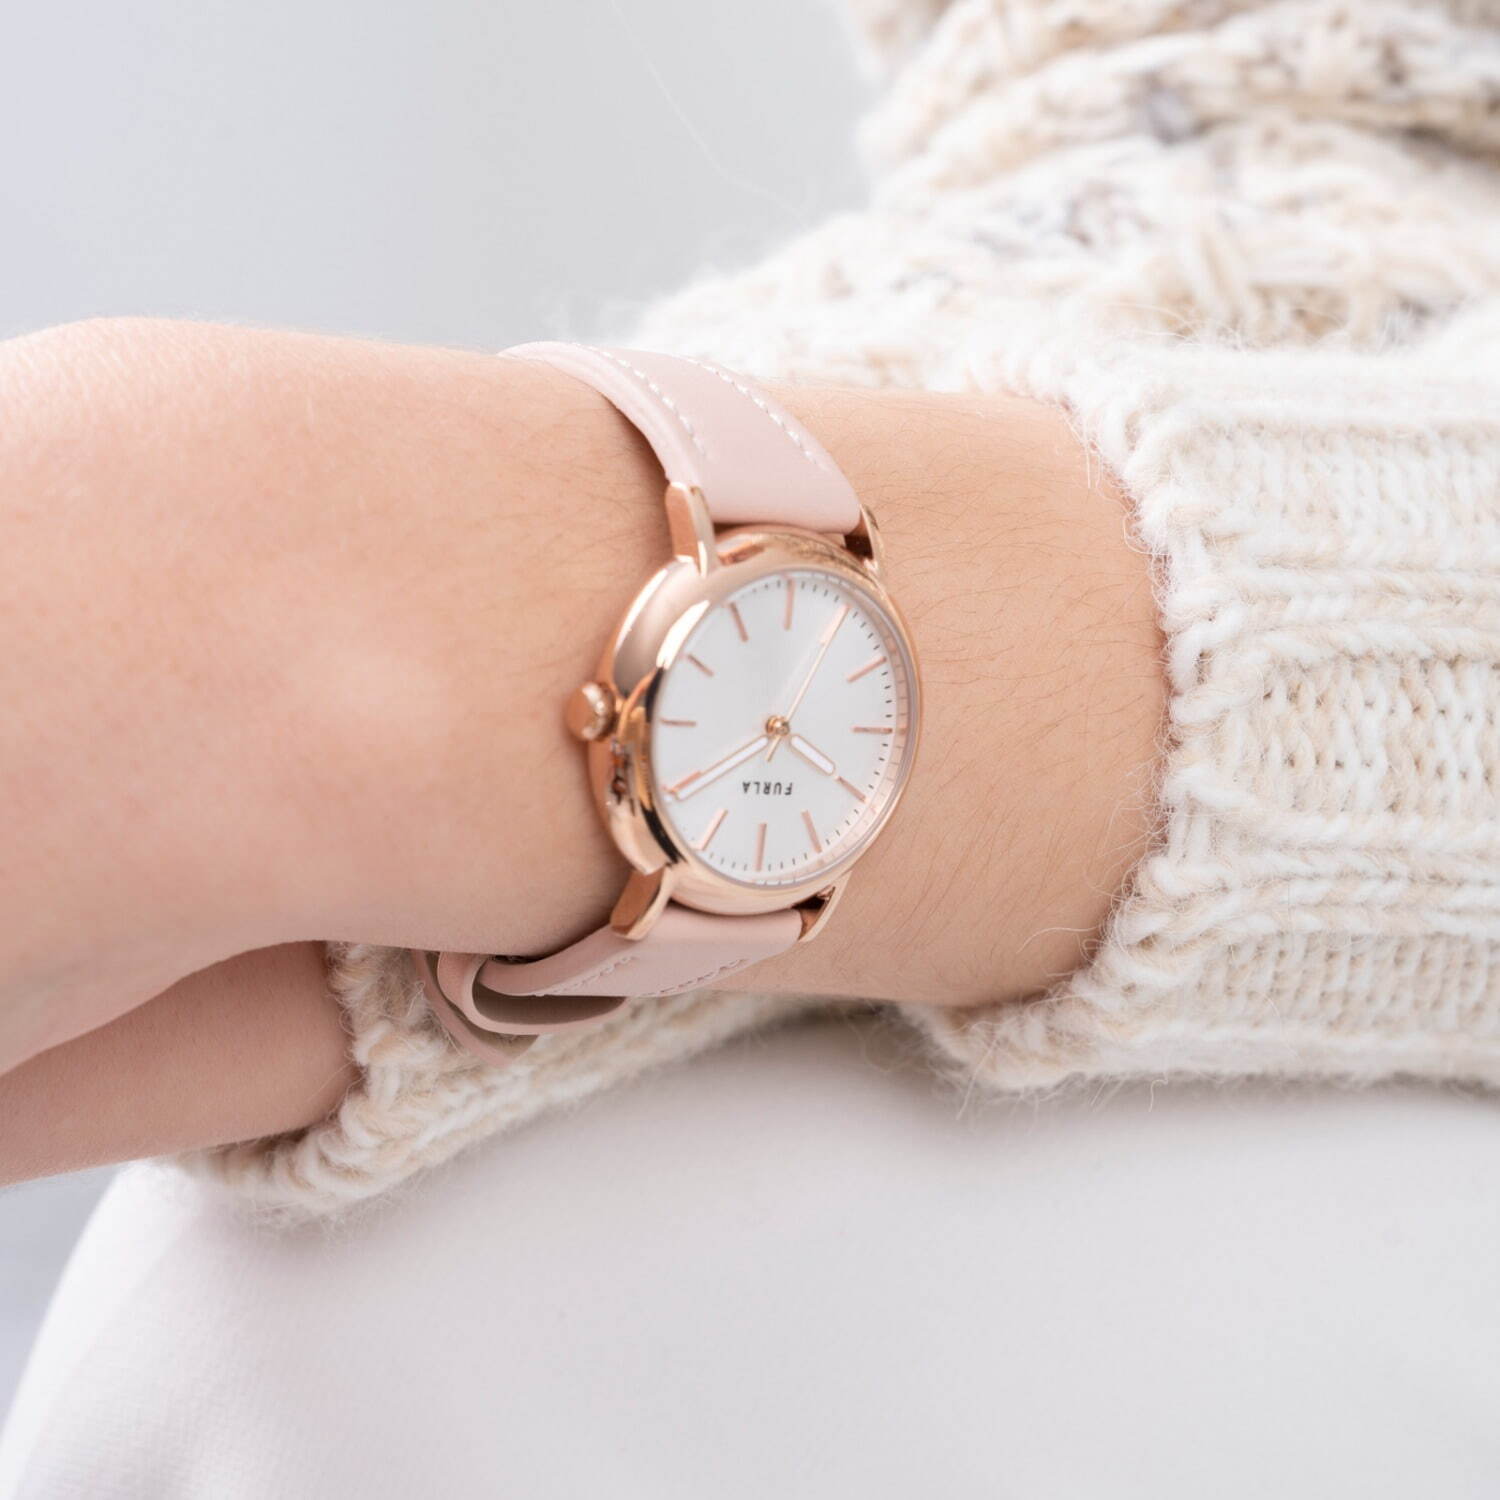 フルラ“淡いピンクトーン”の新作腕時計「フルラ イージー シェイプ